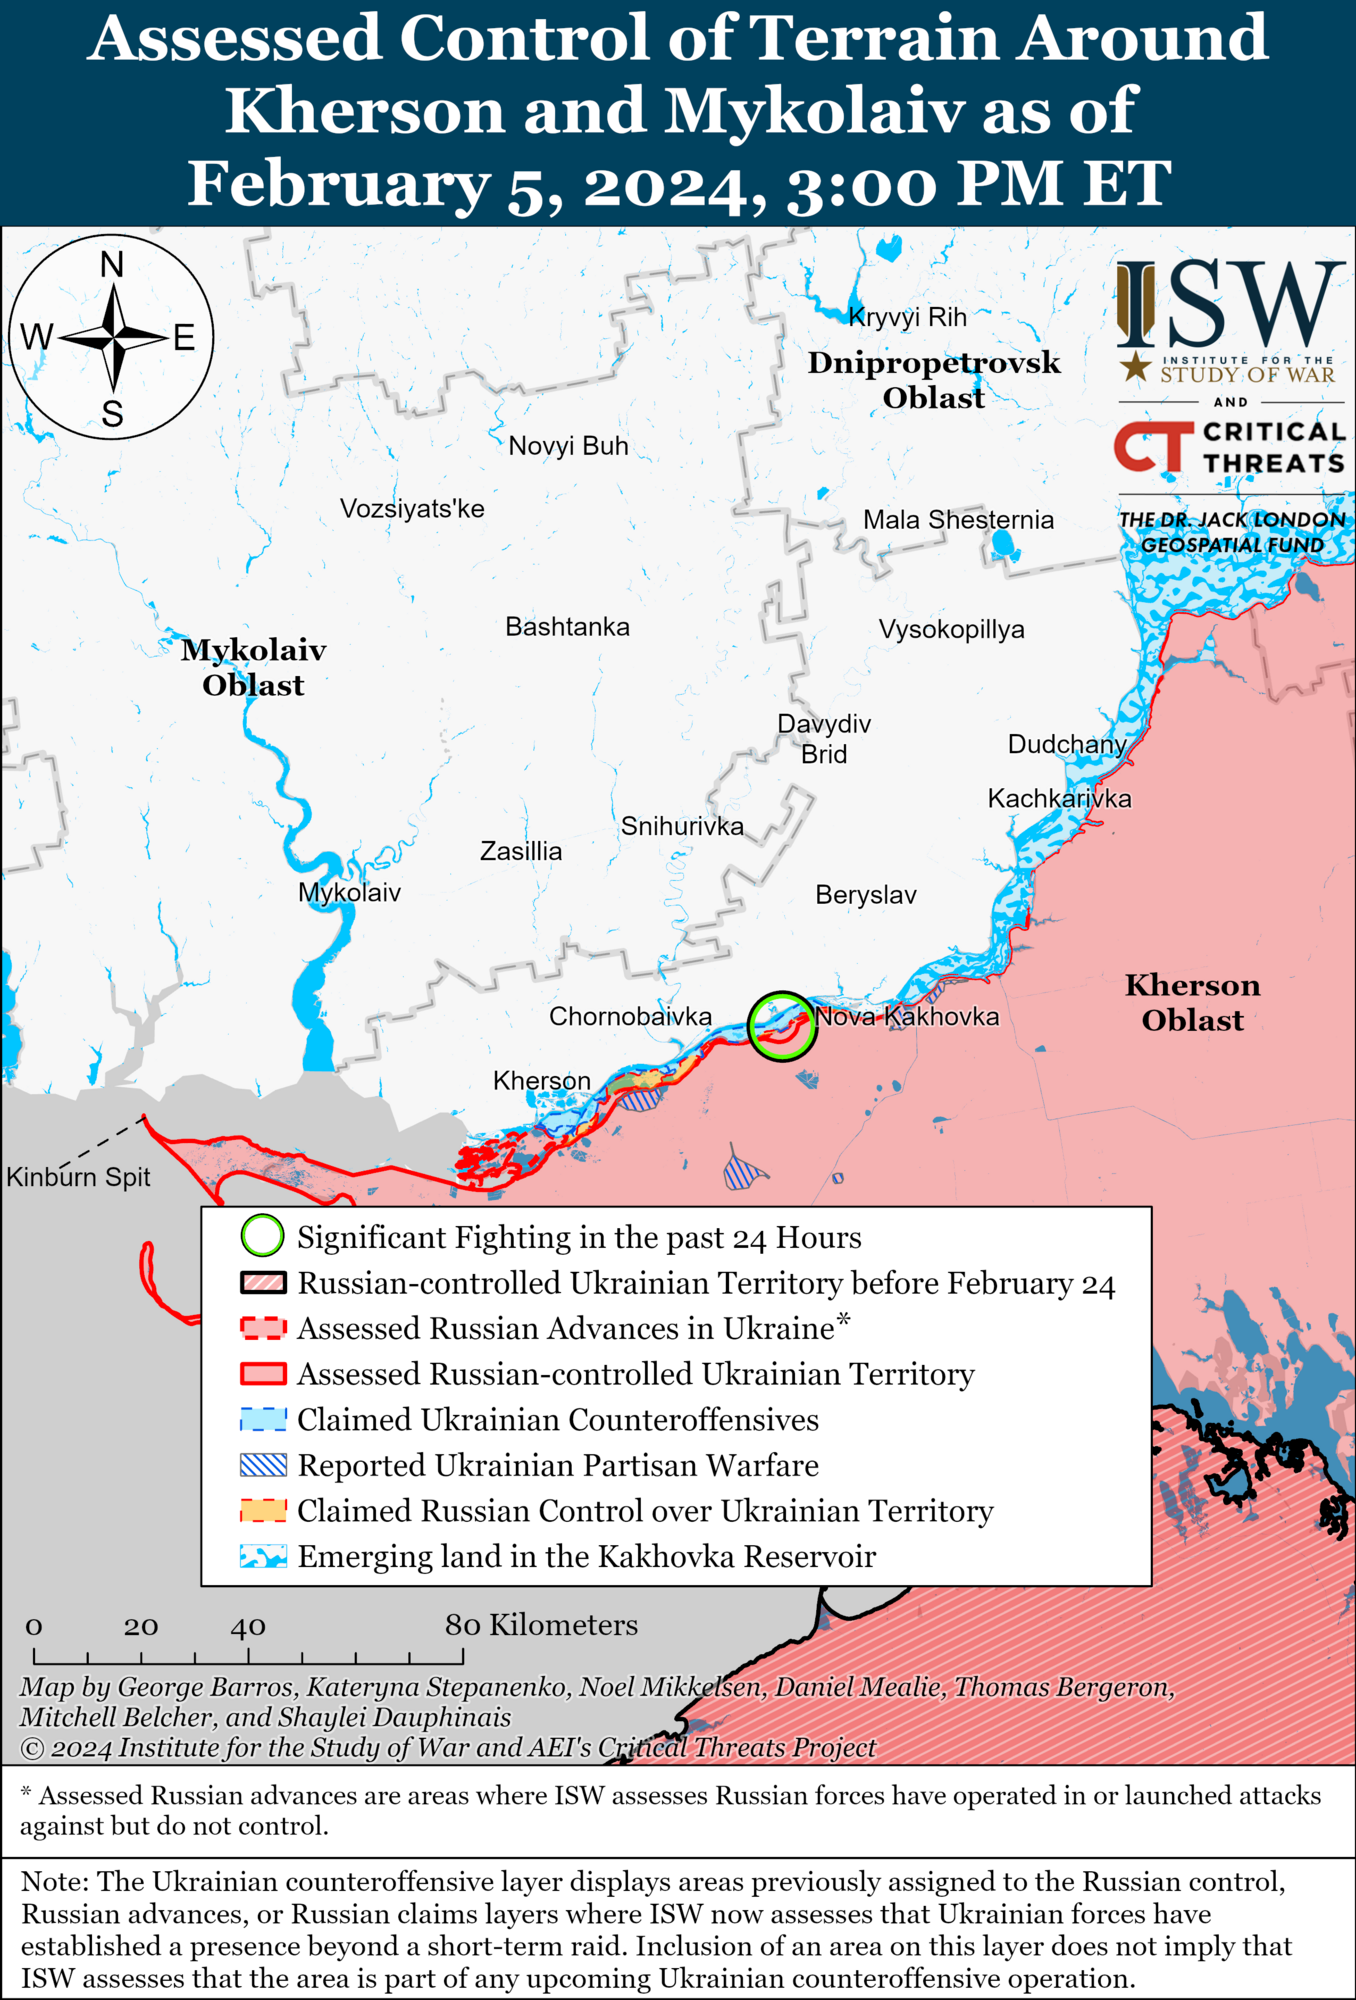 Українські війська просунулися біля Авдіївки, окупанти наступають під Сіверськом: карти